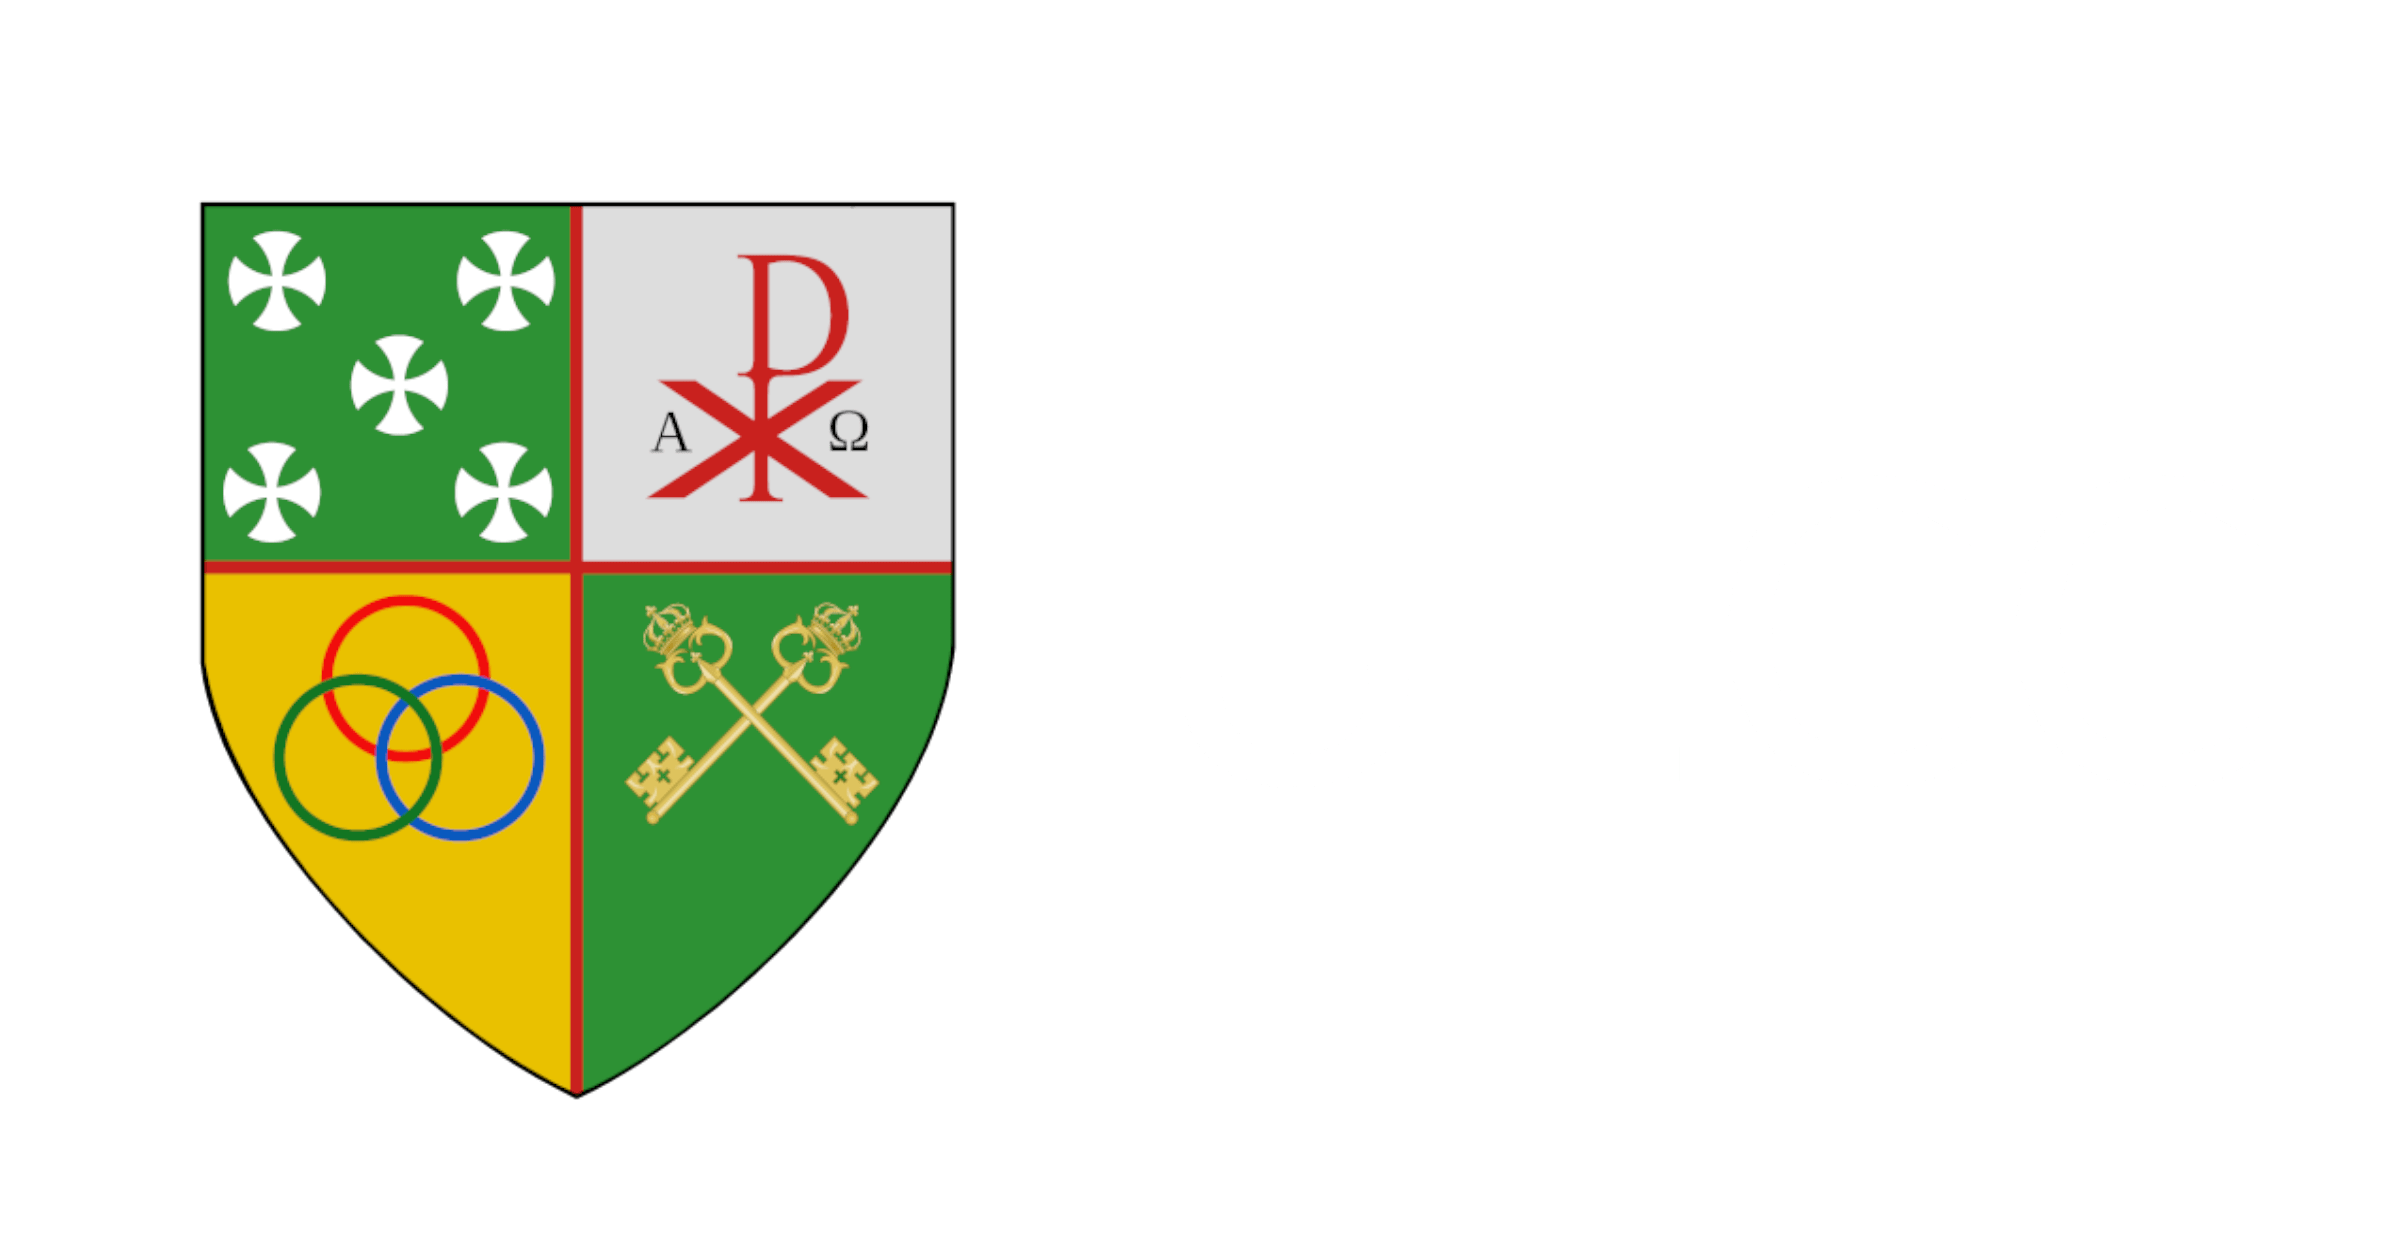 uecc logo banner crop1